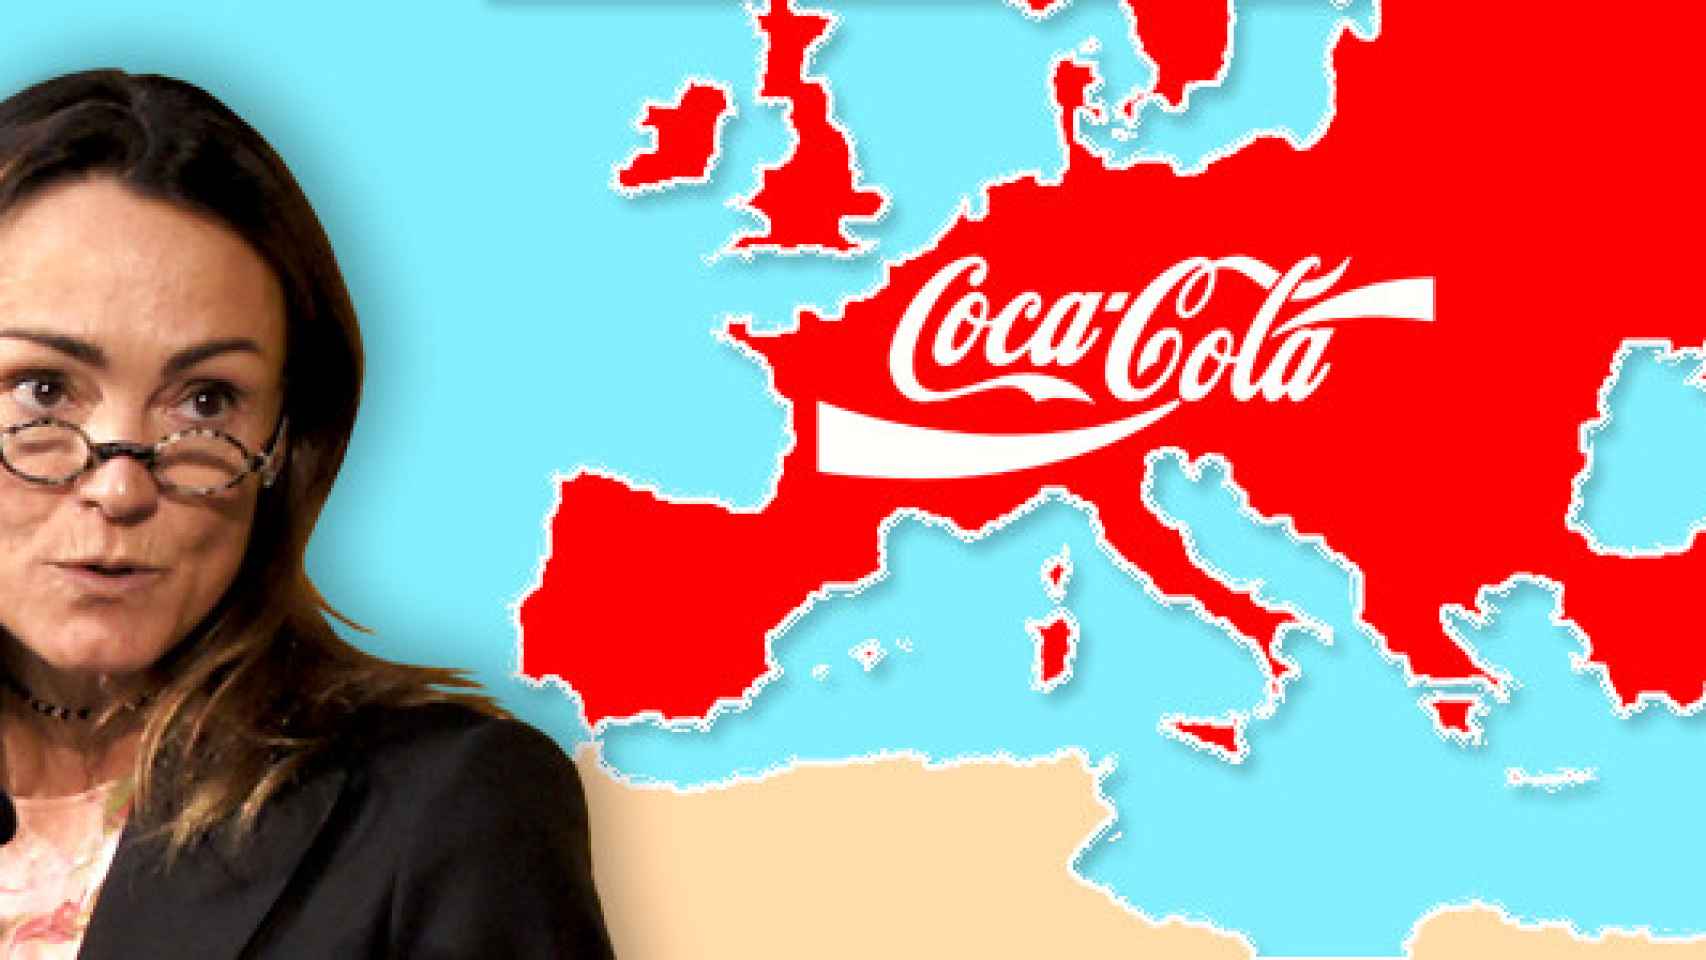 Sol Daurella, la presidenta de Coca-Cola European Partners, y el mapa de la nueva macroembotelladora / CG